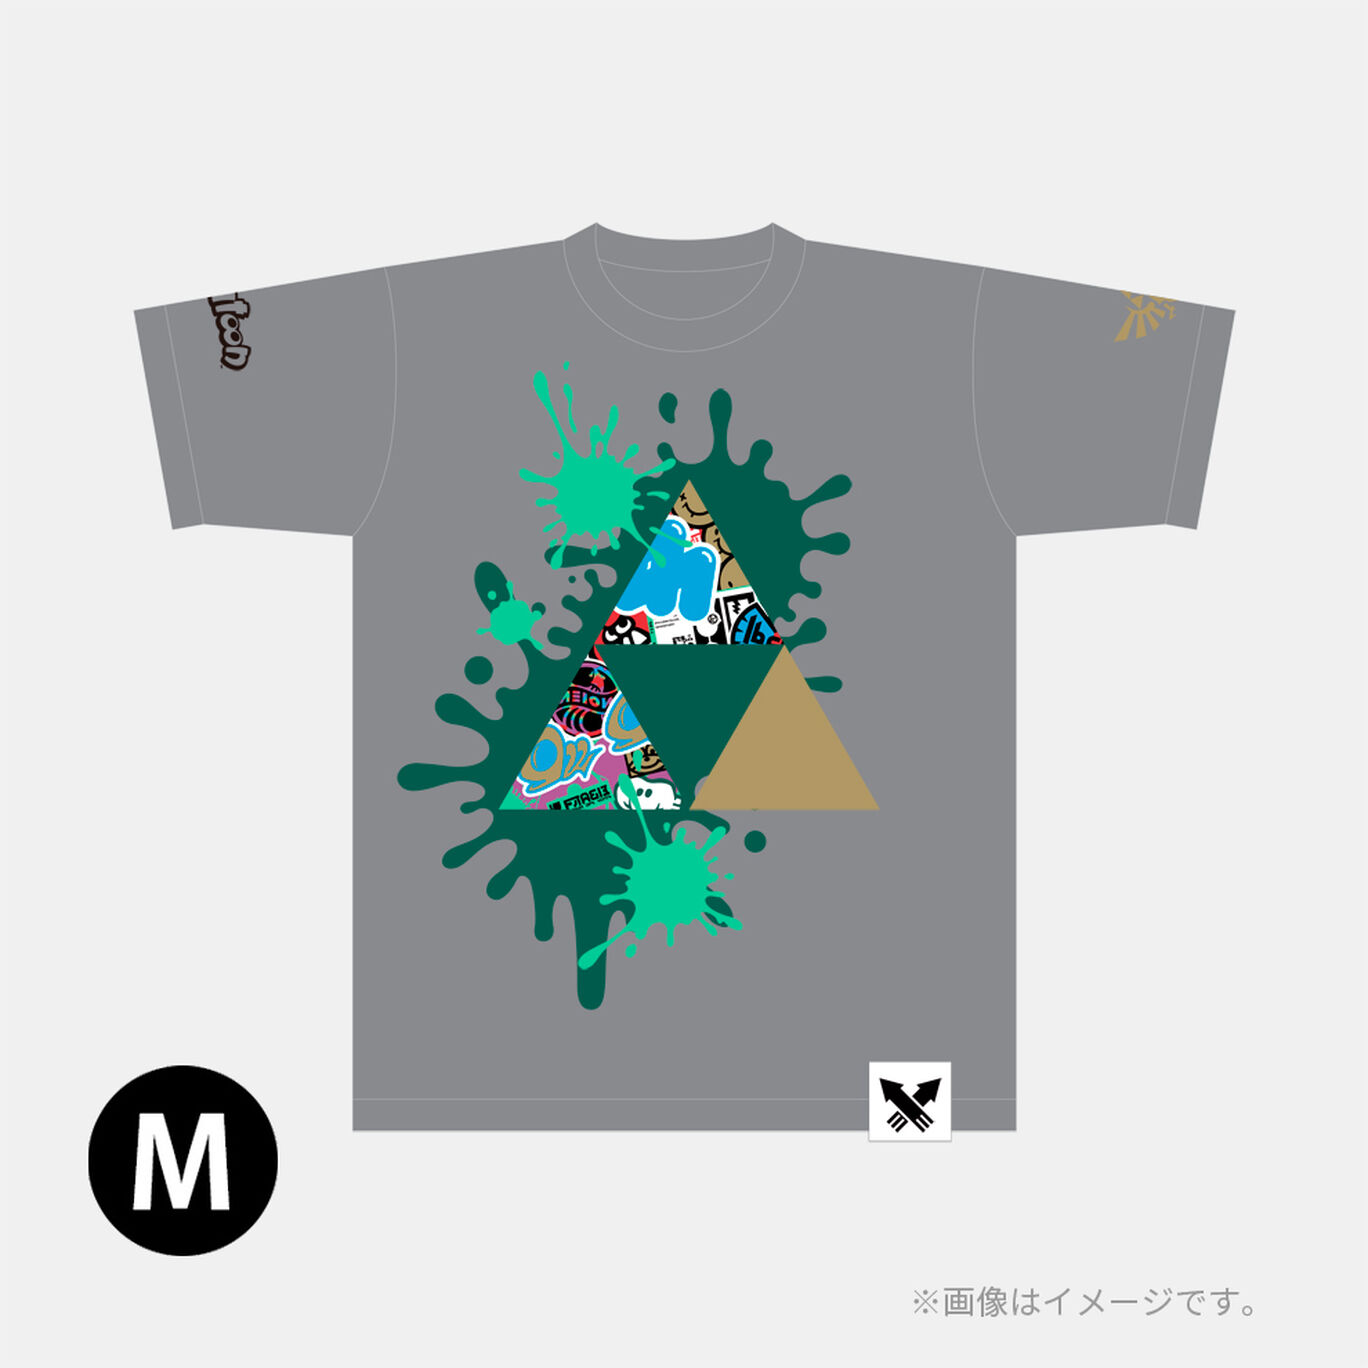 スプラトゥーン3 フェスTシャツ 勇気 M